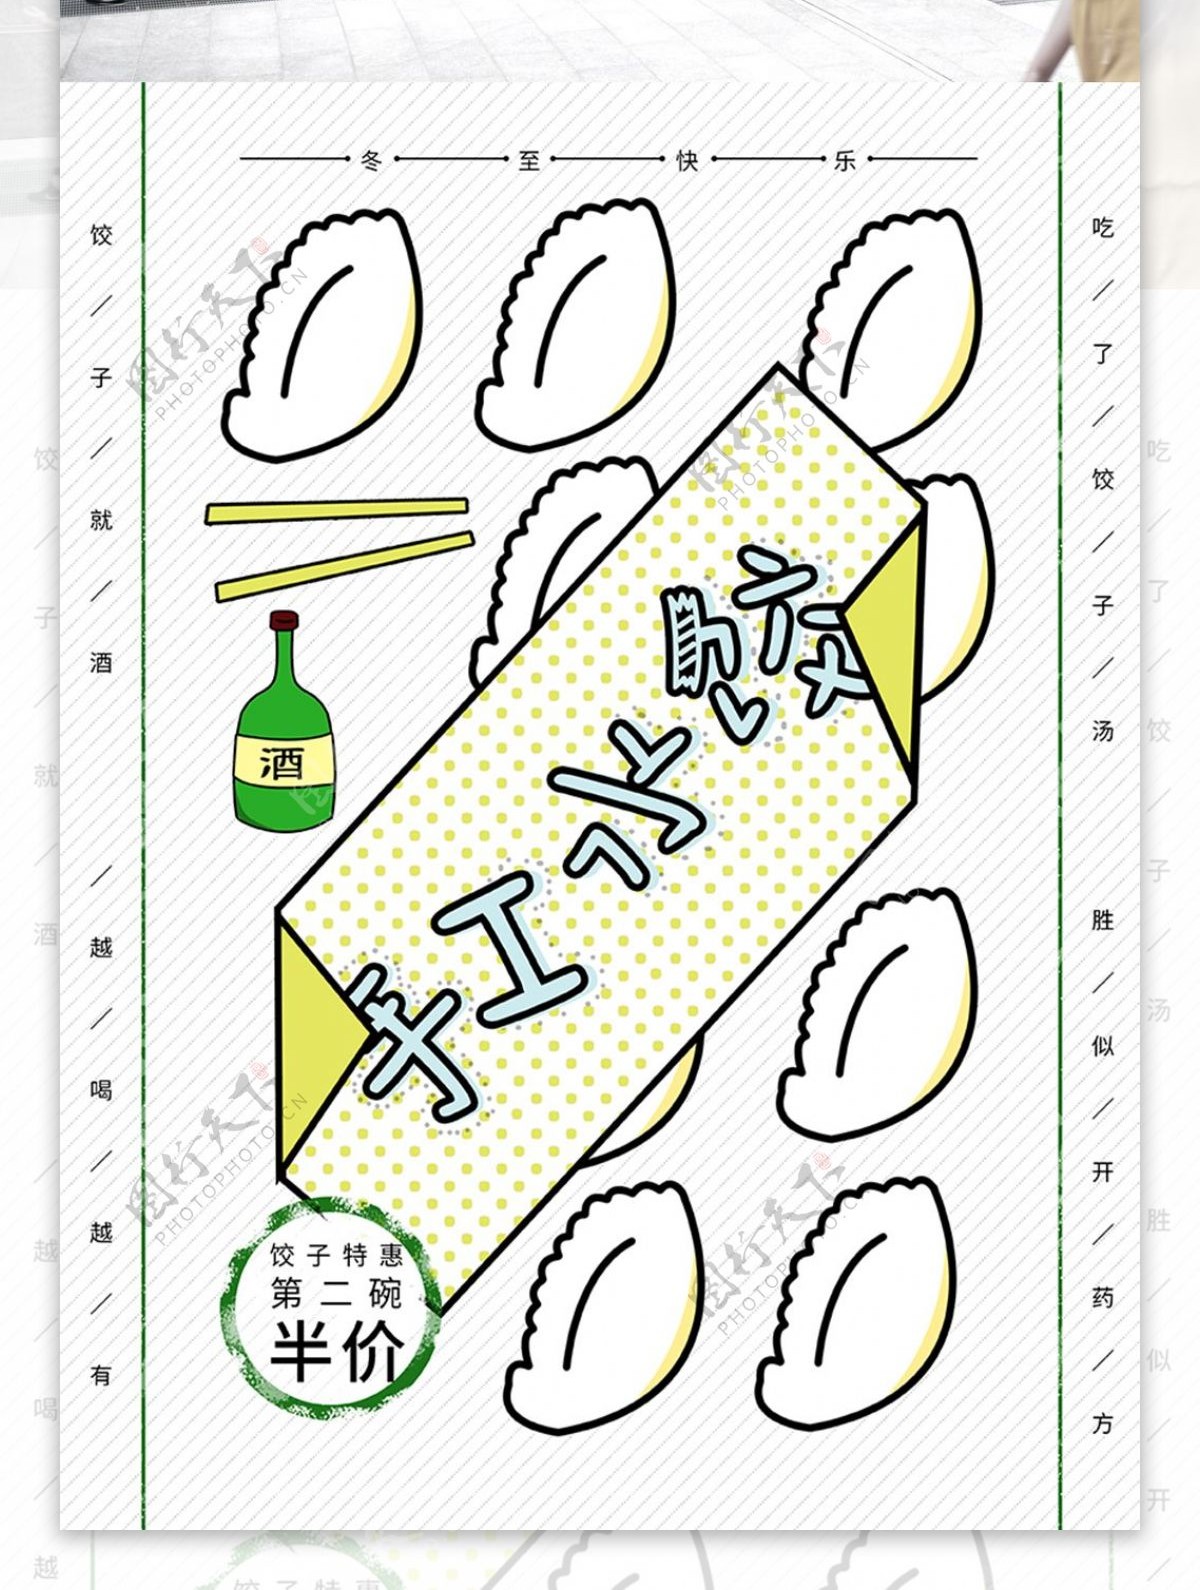 饺子冬至美食活动创意几何海报